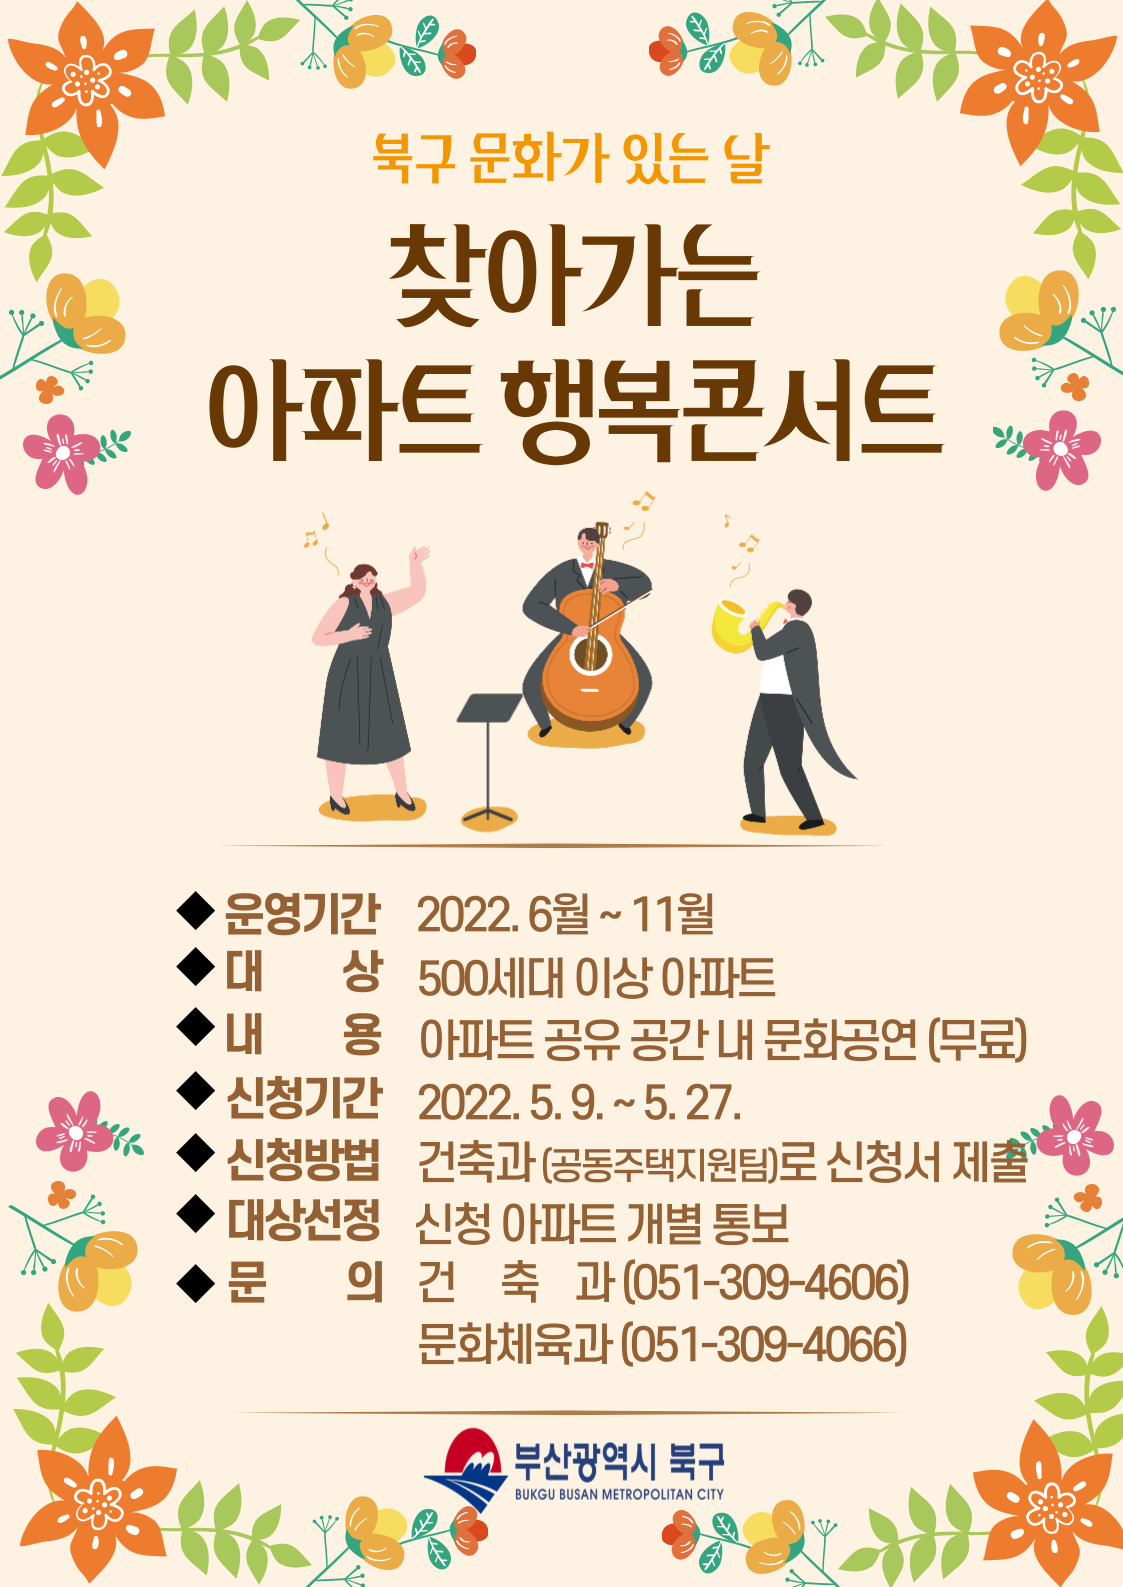 「찾아가는 아파트 행복콘서트」개최 알림